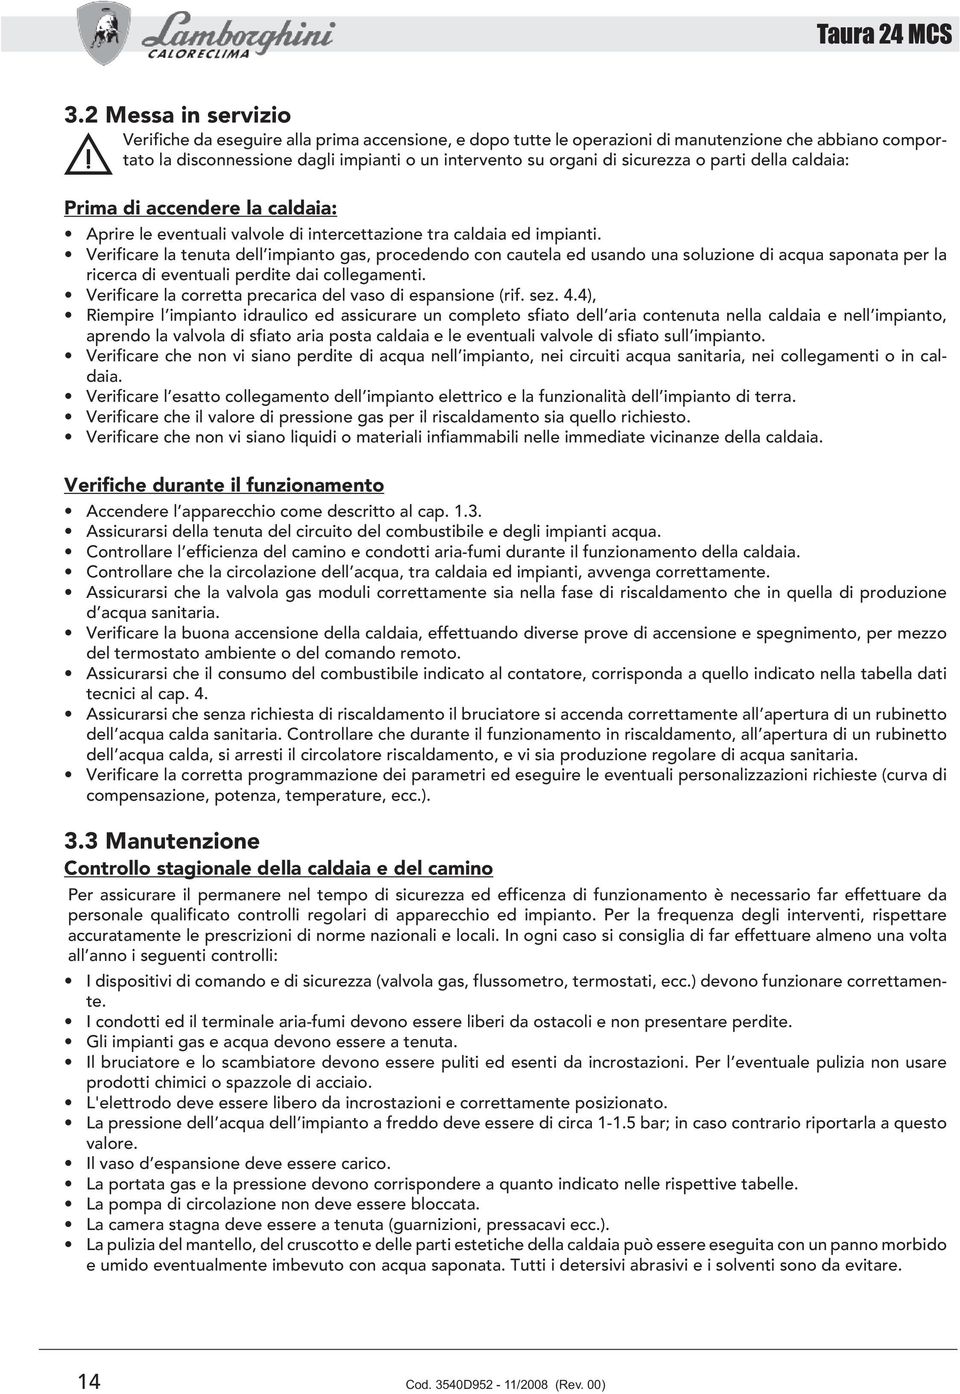 TAURA 24 MCS AZIENDA CERTIFICATA ISO PDF Free Download